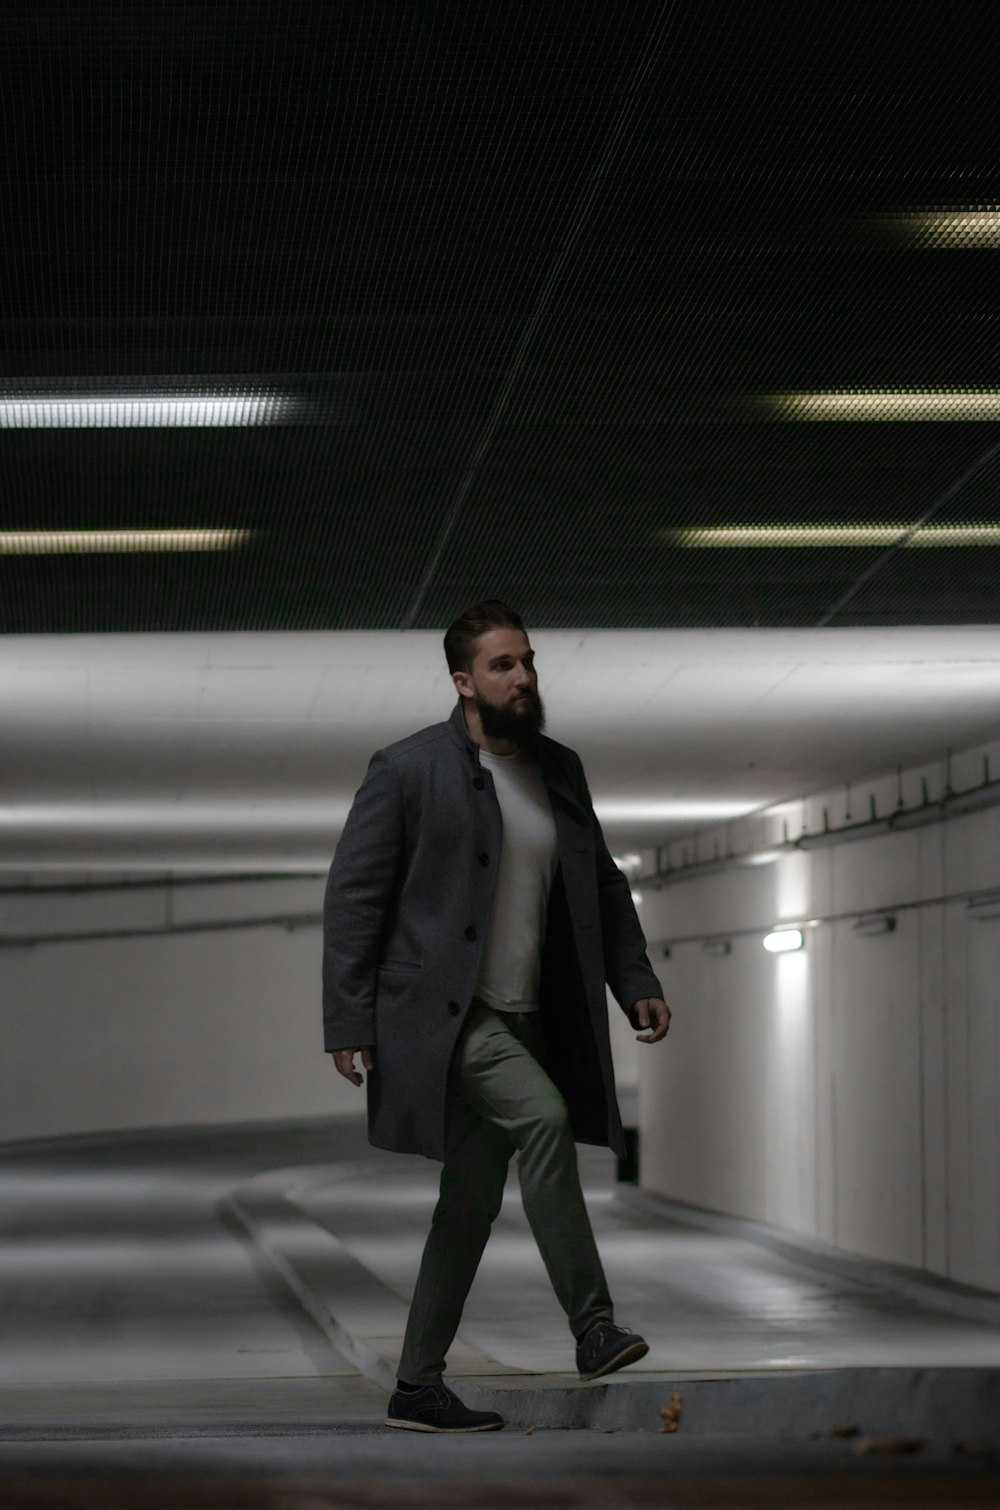 Un homme en manteau traverse un tunnel